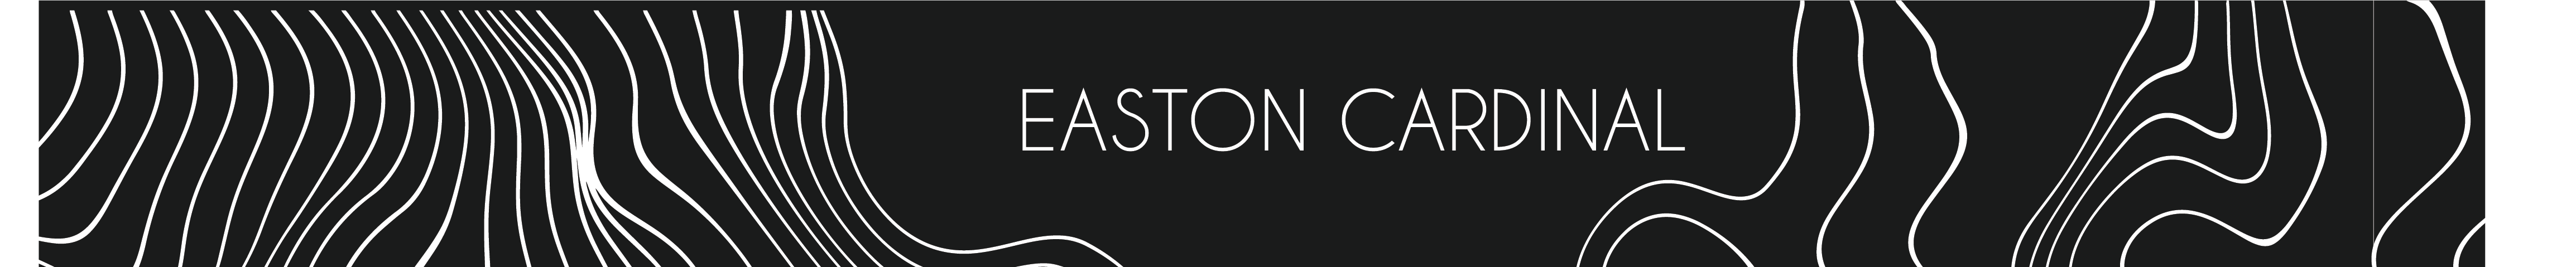 Banner de perfil de Easton Cardinal